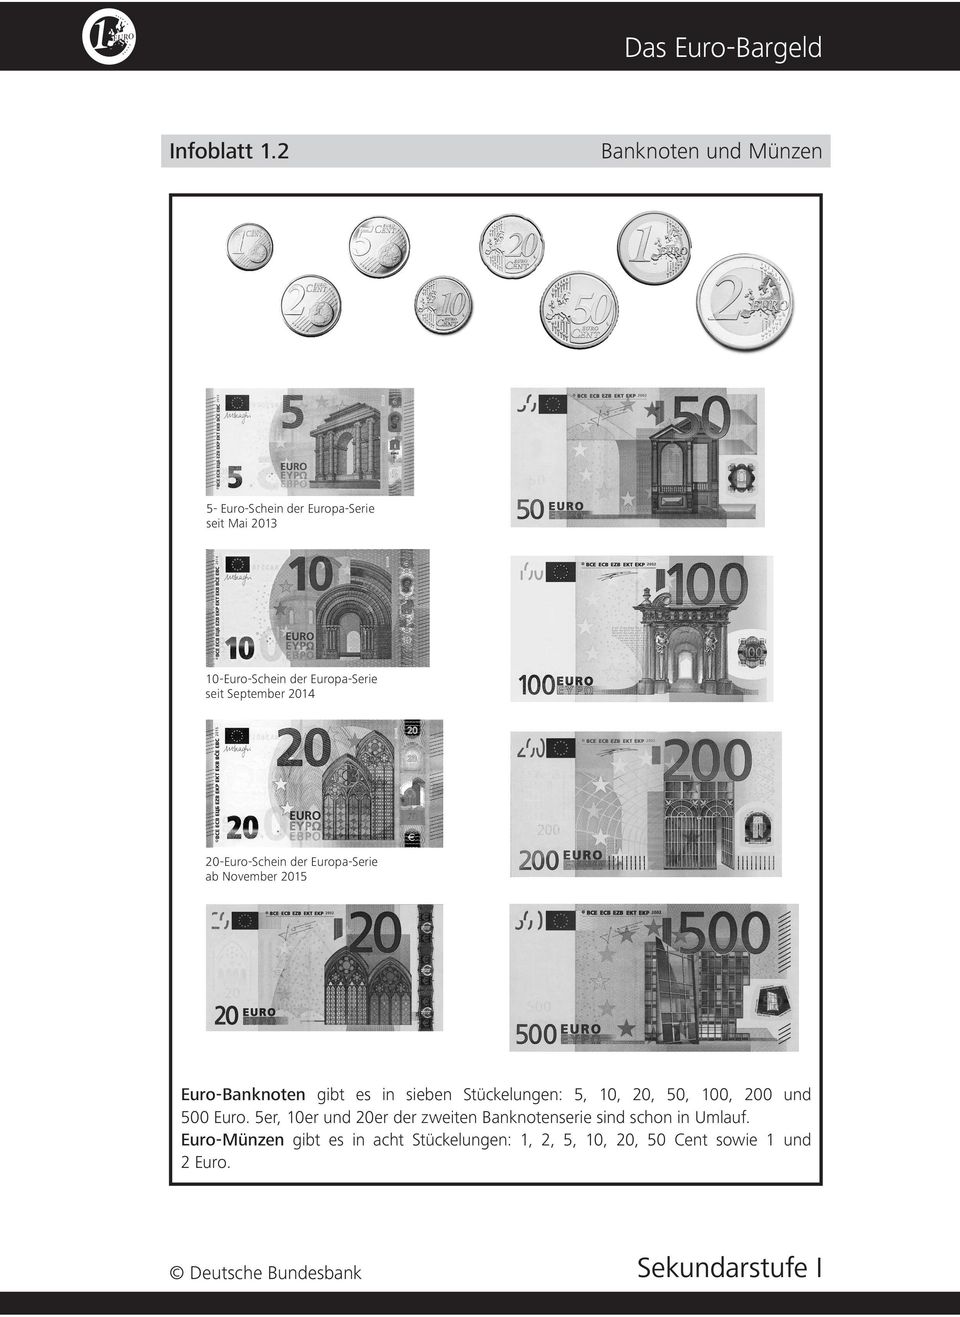 September 2014 20-Euro-Schein der Europa-Serie ab November 2015 Euro-Banknoten gibt es in sieben